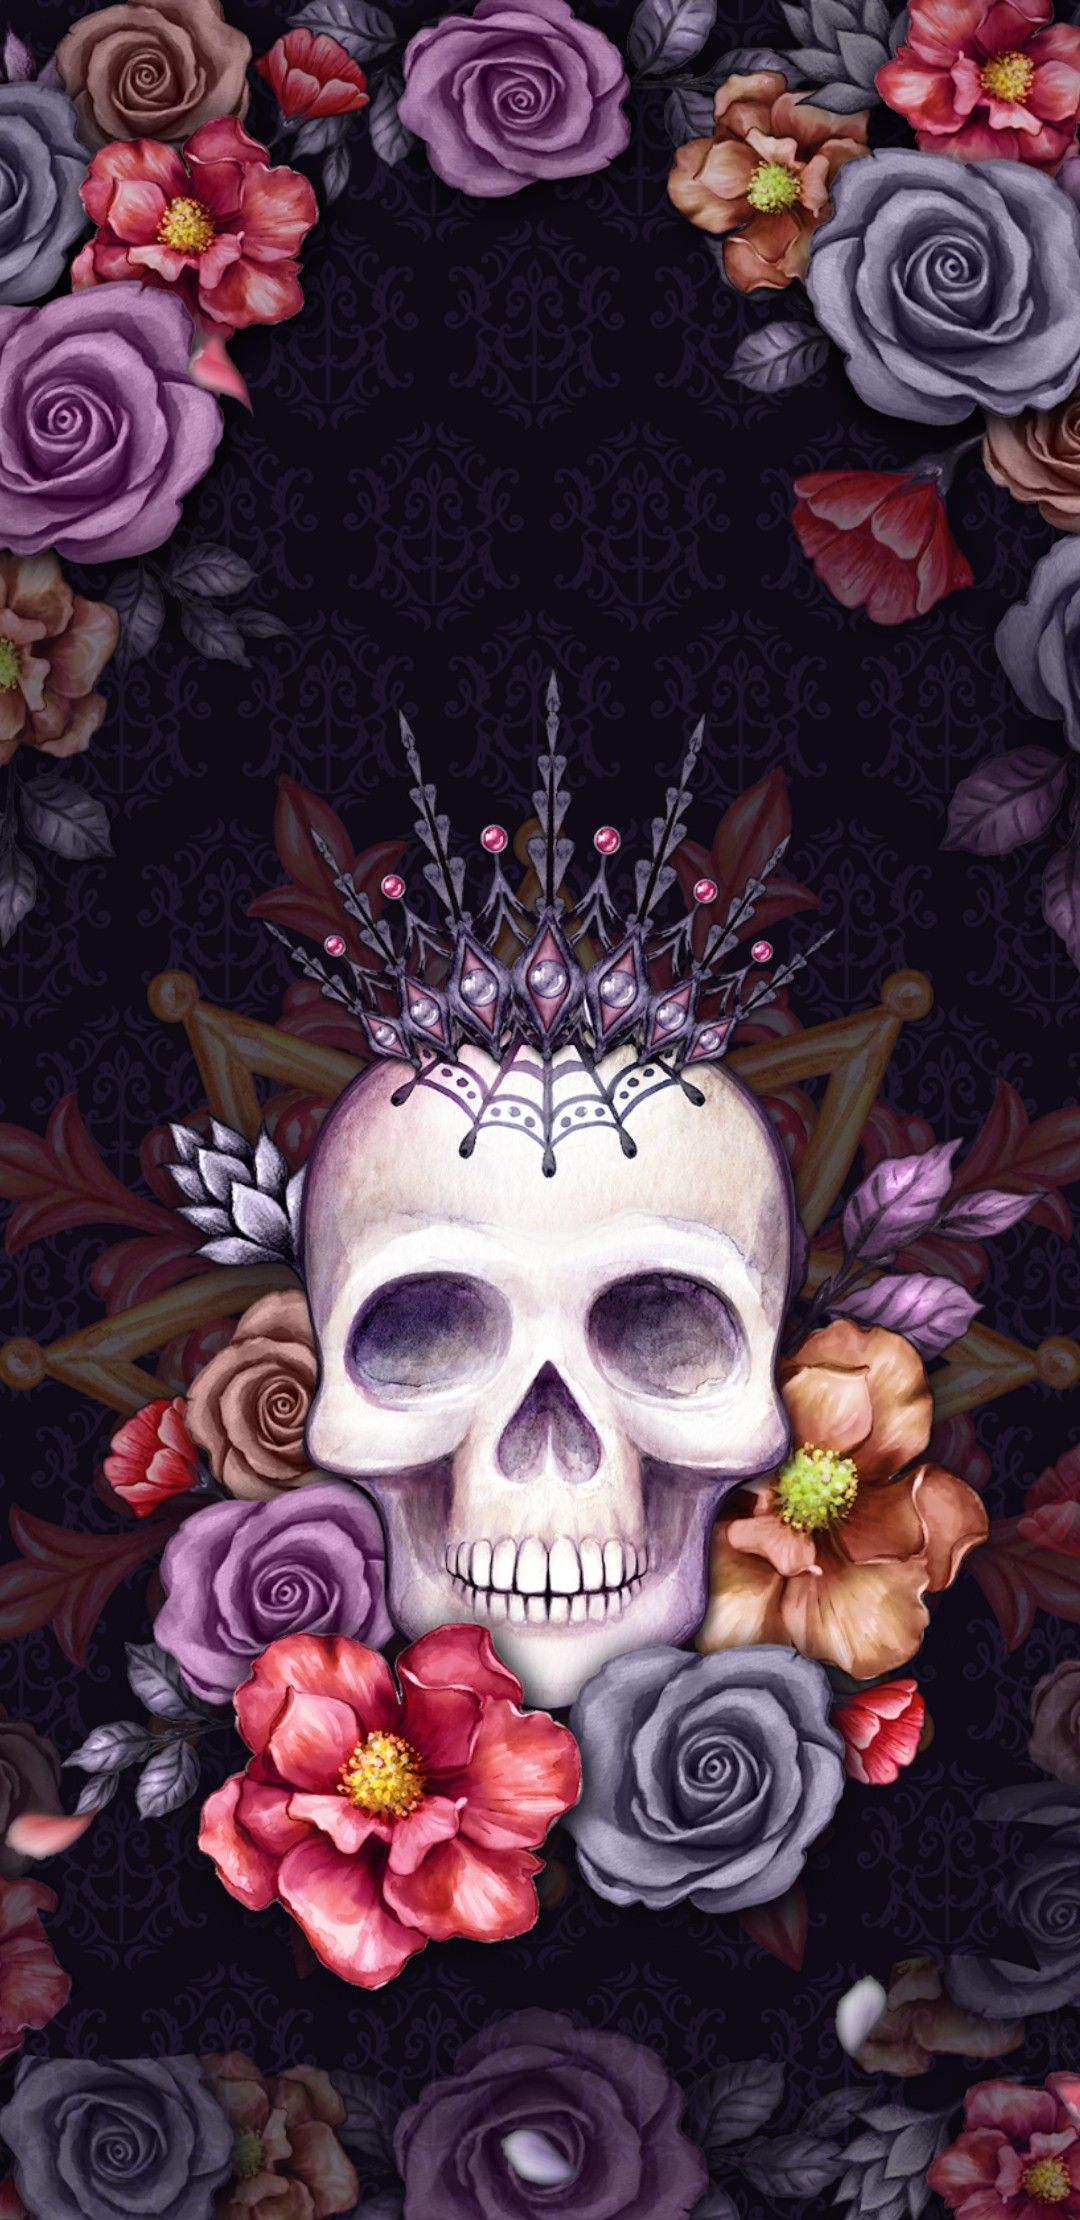 1080x2220 By Artist | Sugar skull wallpaper, Sugar skull art, Skull wallpaper